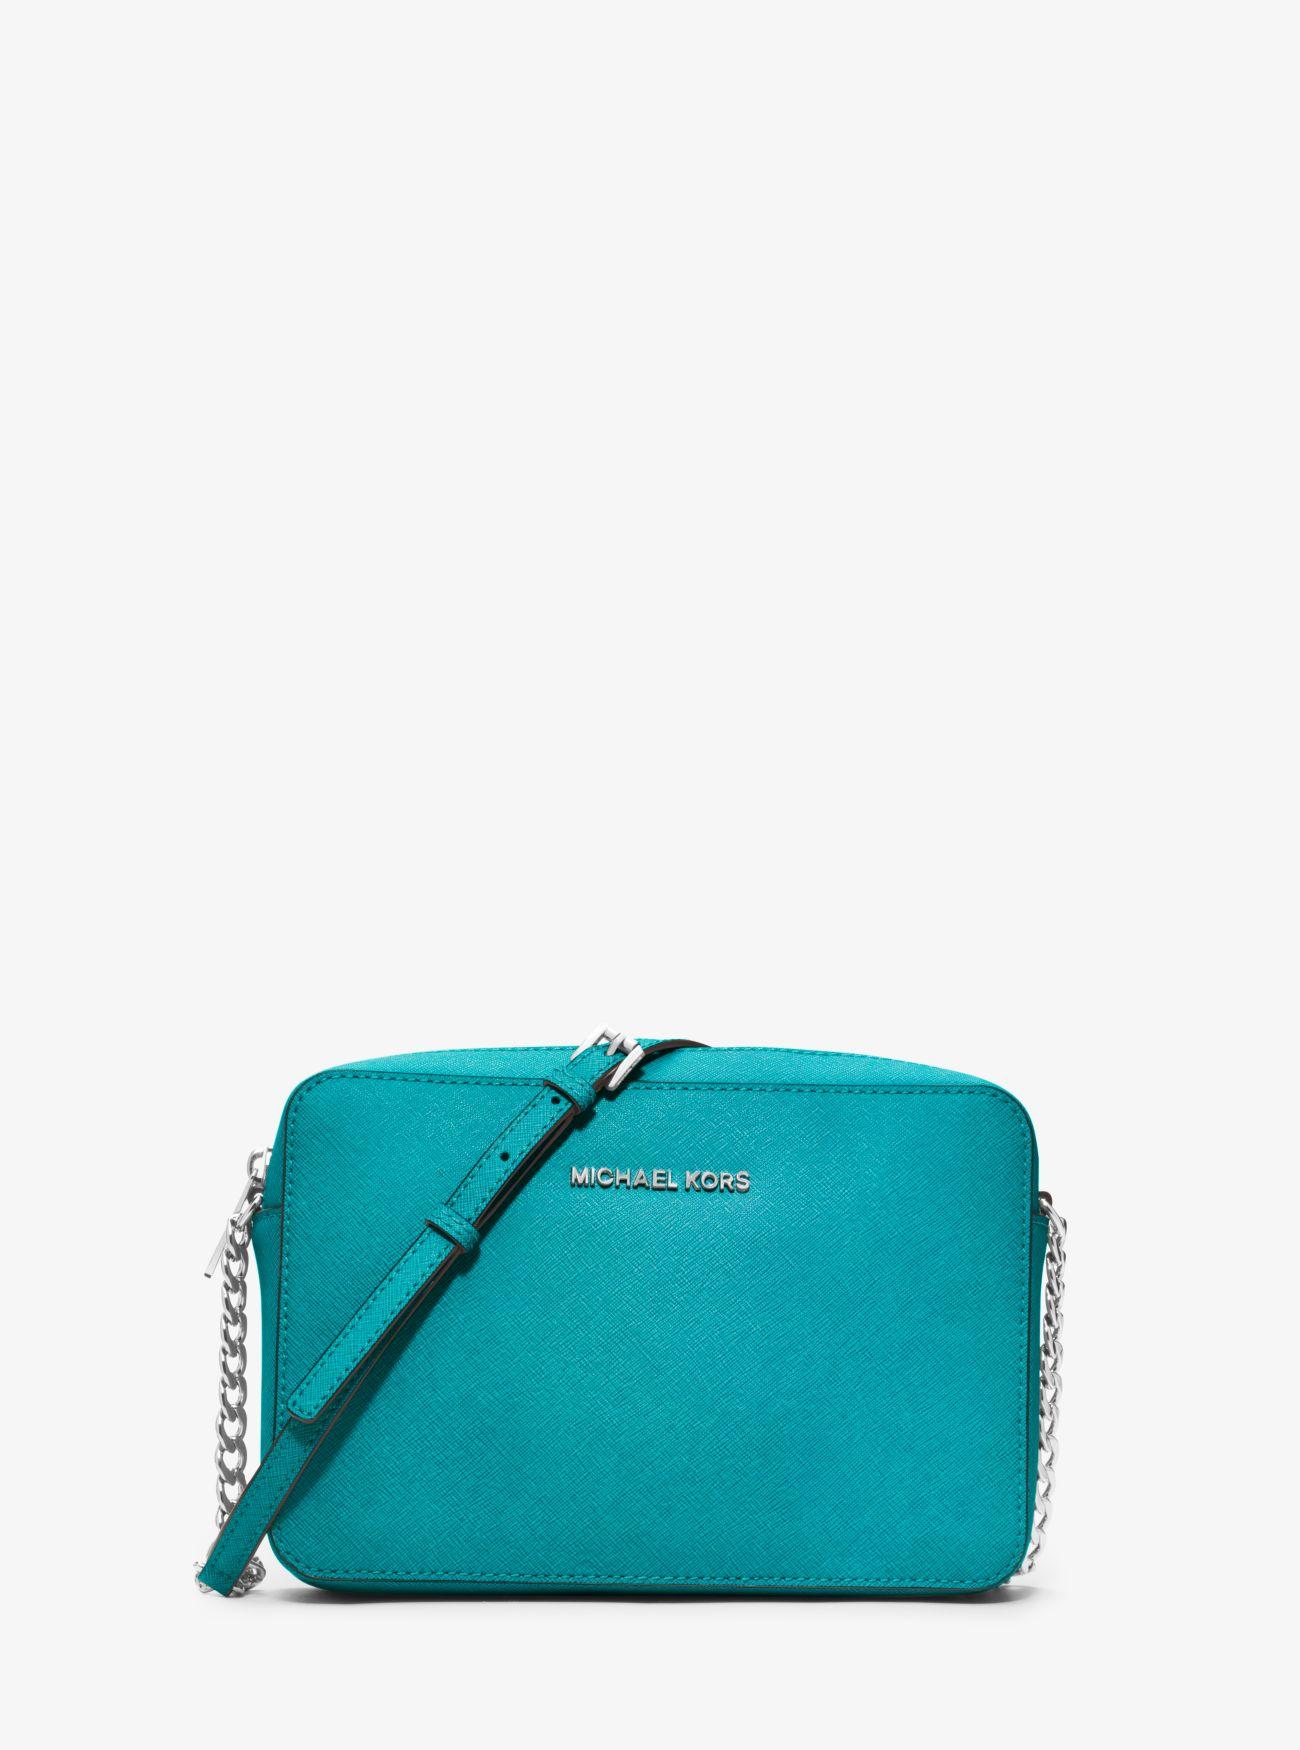 Descubrir 113+ imagen michael kors turquoise handbag